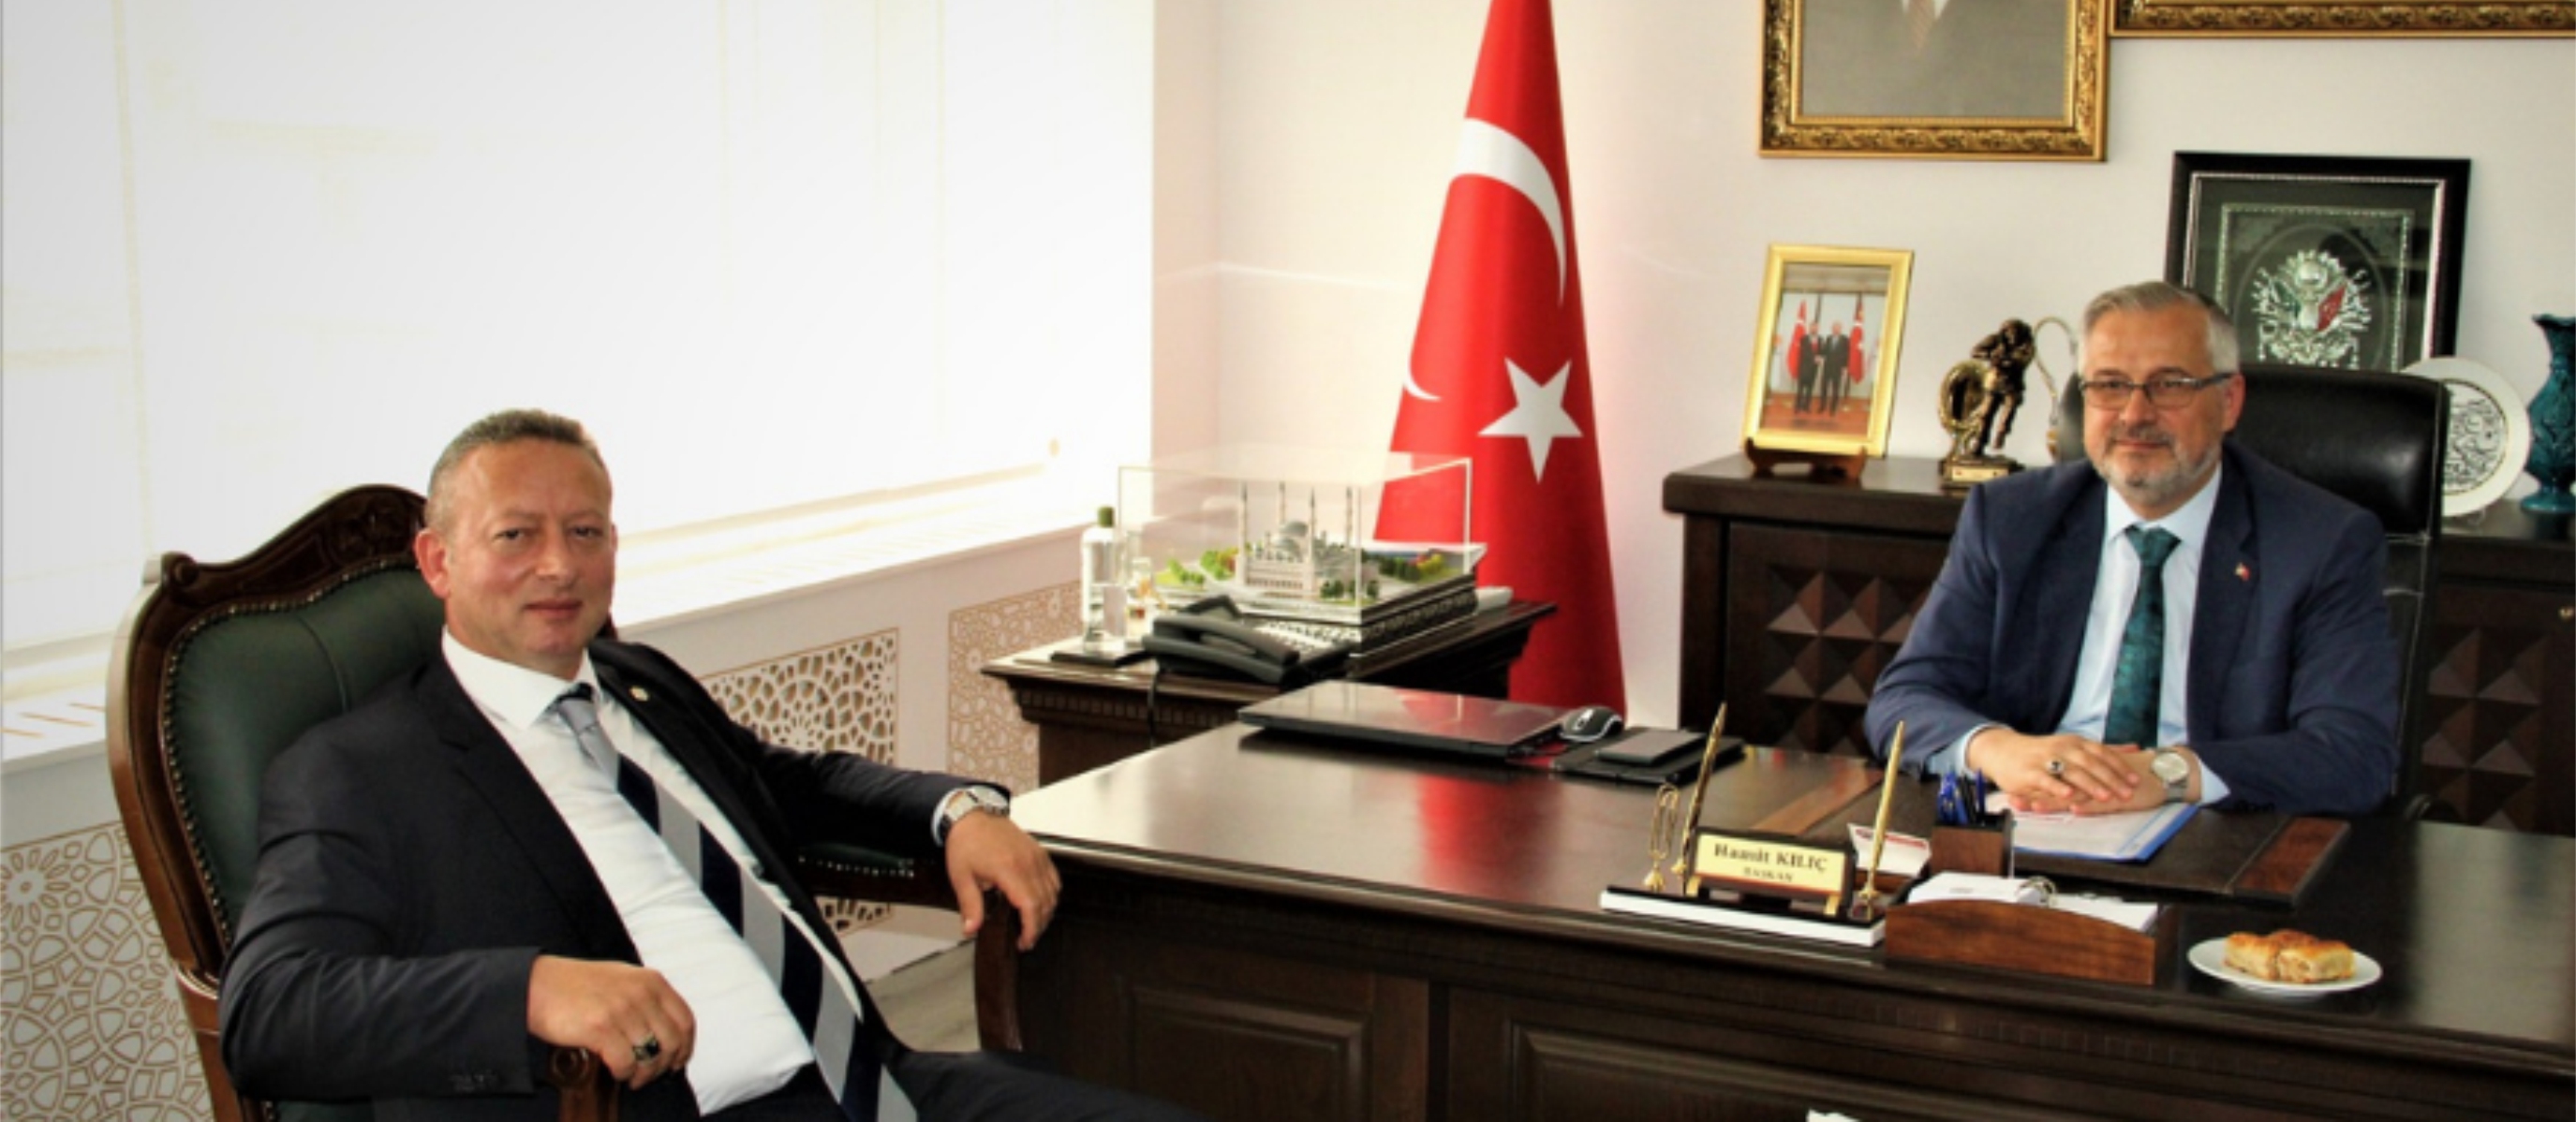 Bafra Tso Başkanı Kocabaş'tan Başkan Kılıç’a Hayırlı Olsun Ziyareti 1